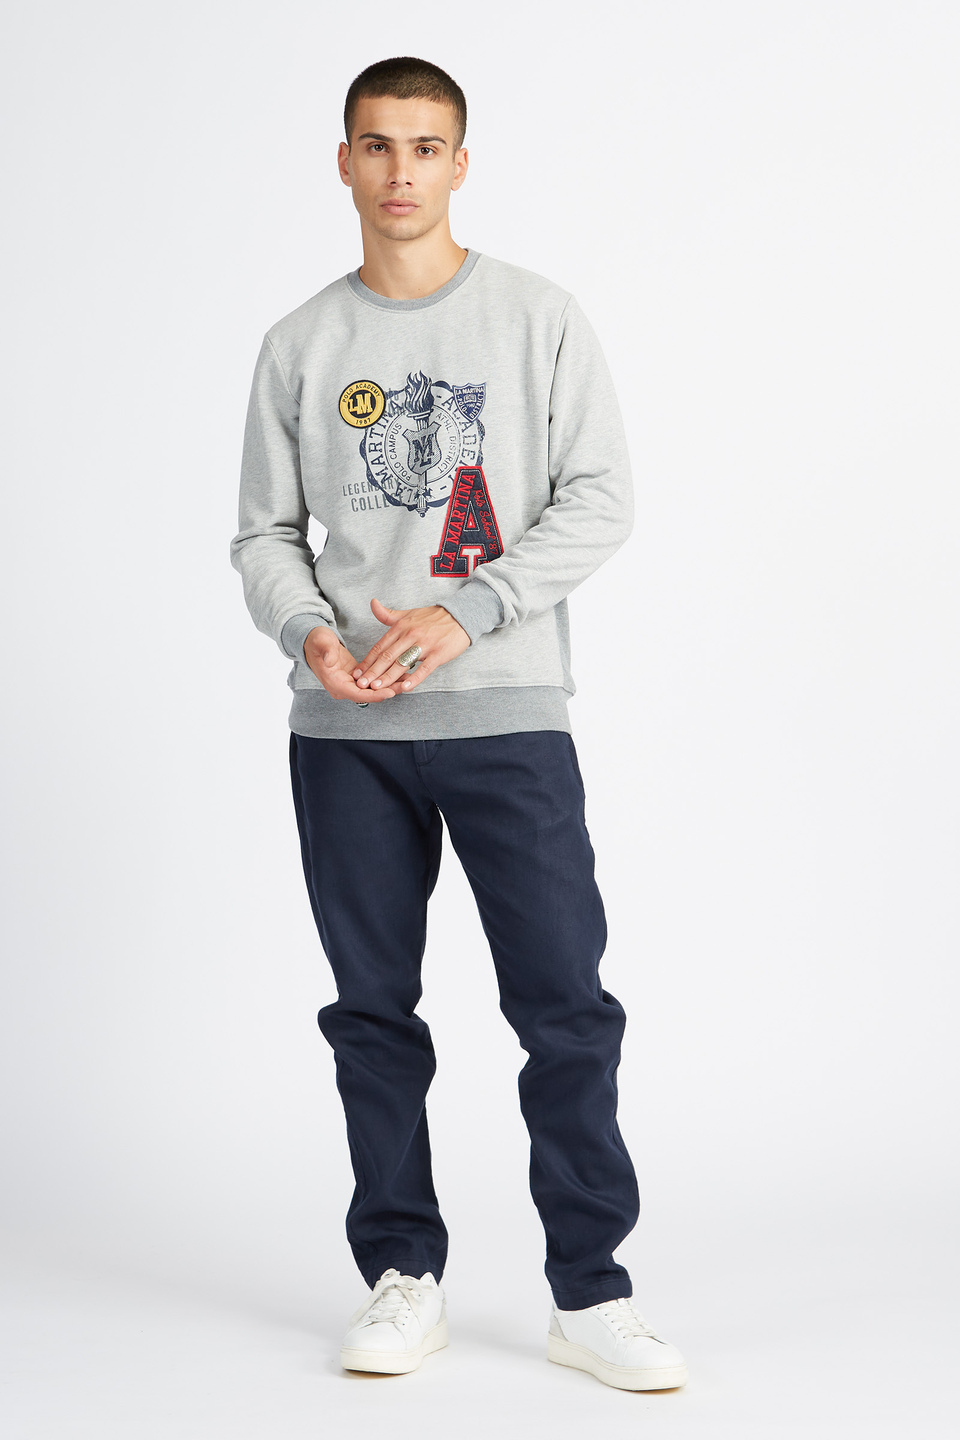 Polo Academy men's full zip crewneck sweatshirt mixed fabric big logo - Vander | La Martina - Official Online Shop